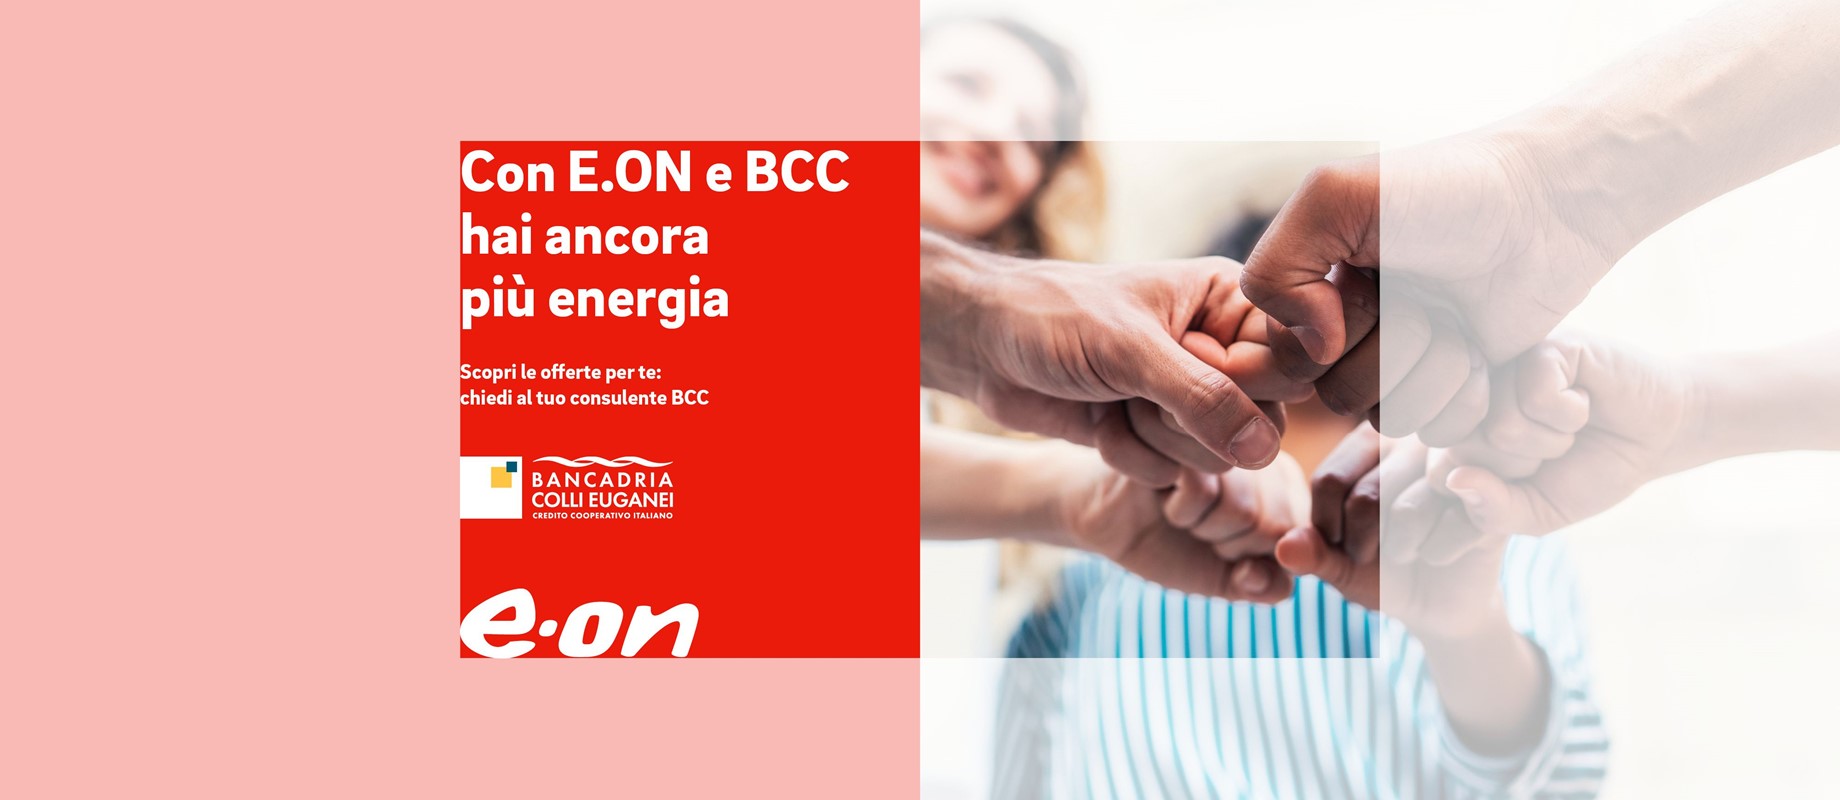 Scopri la miglior energia firmata E.ON . Se sei Socio, richiedi maggiori informazioni presso la tua filiale. 